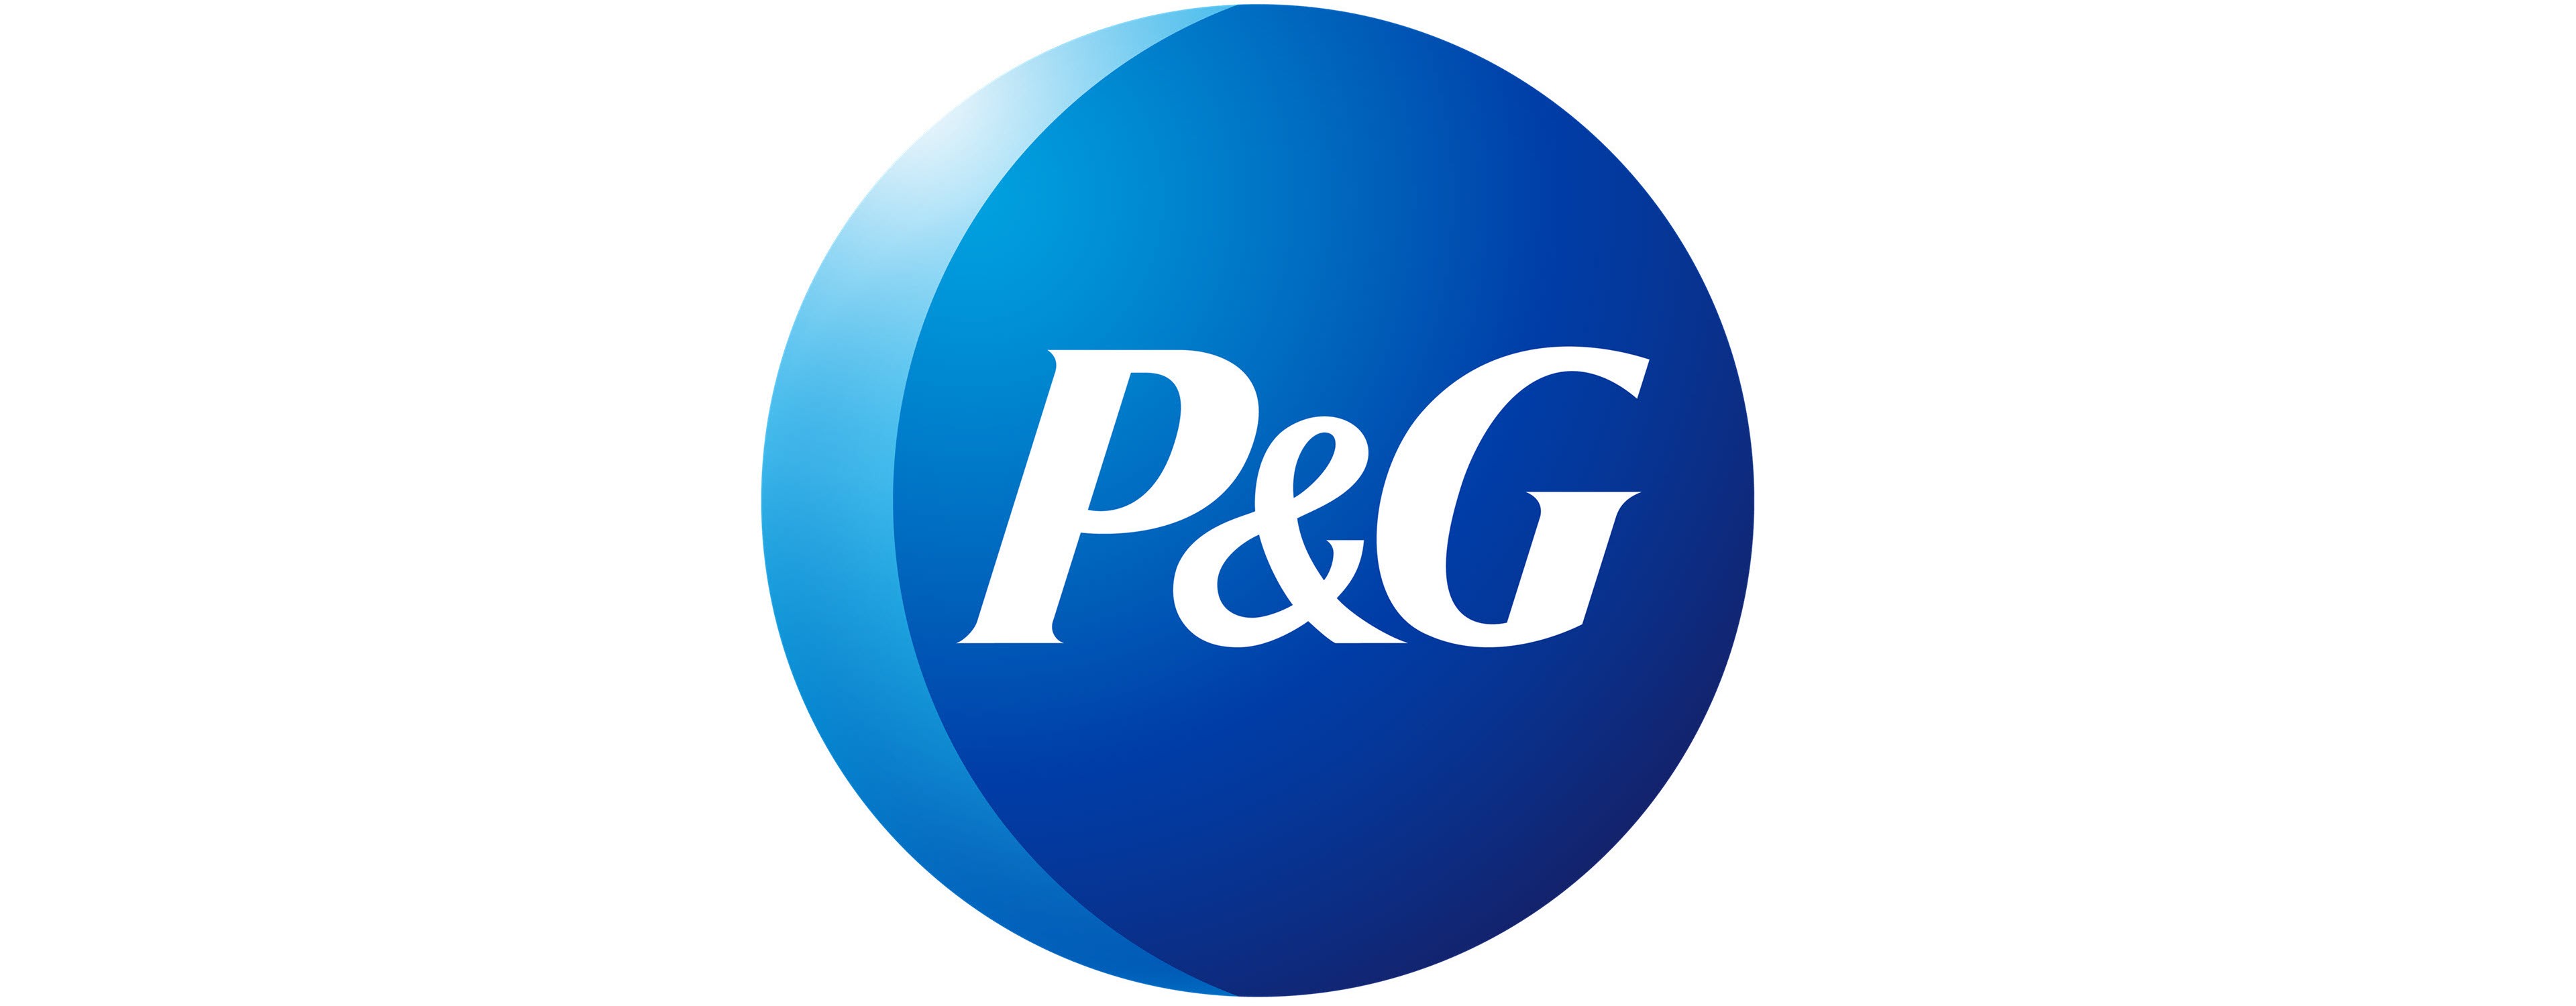 P&G logo